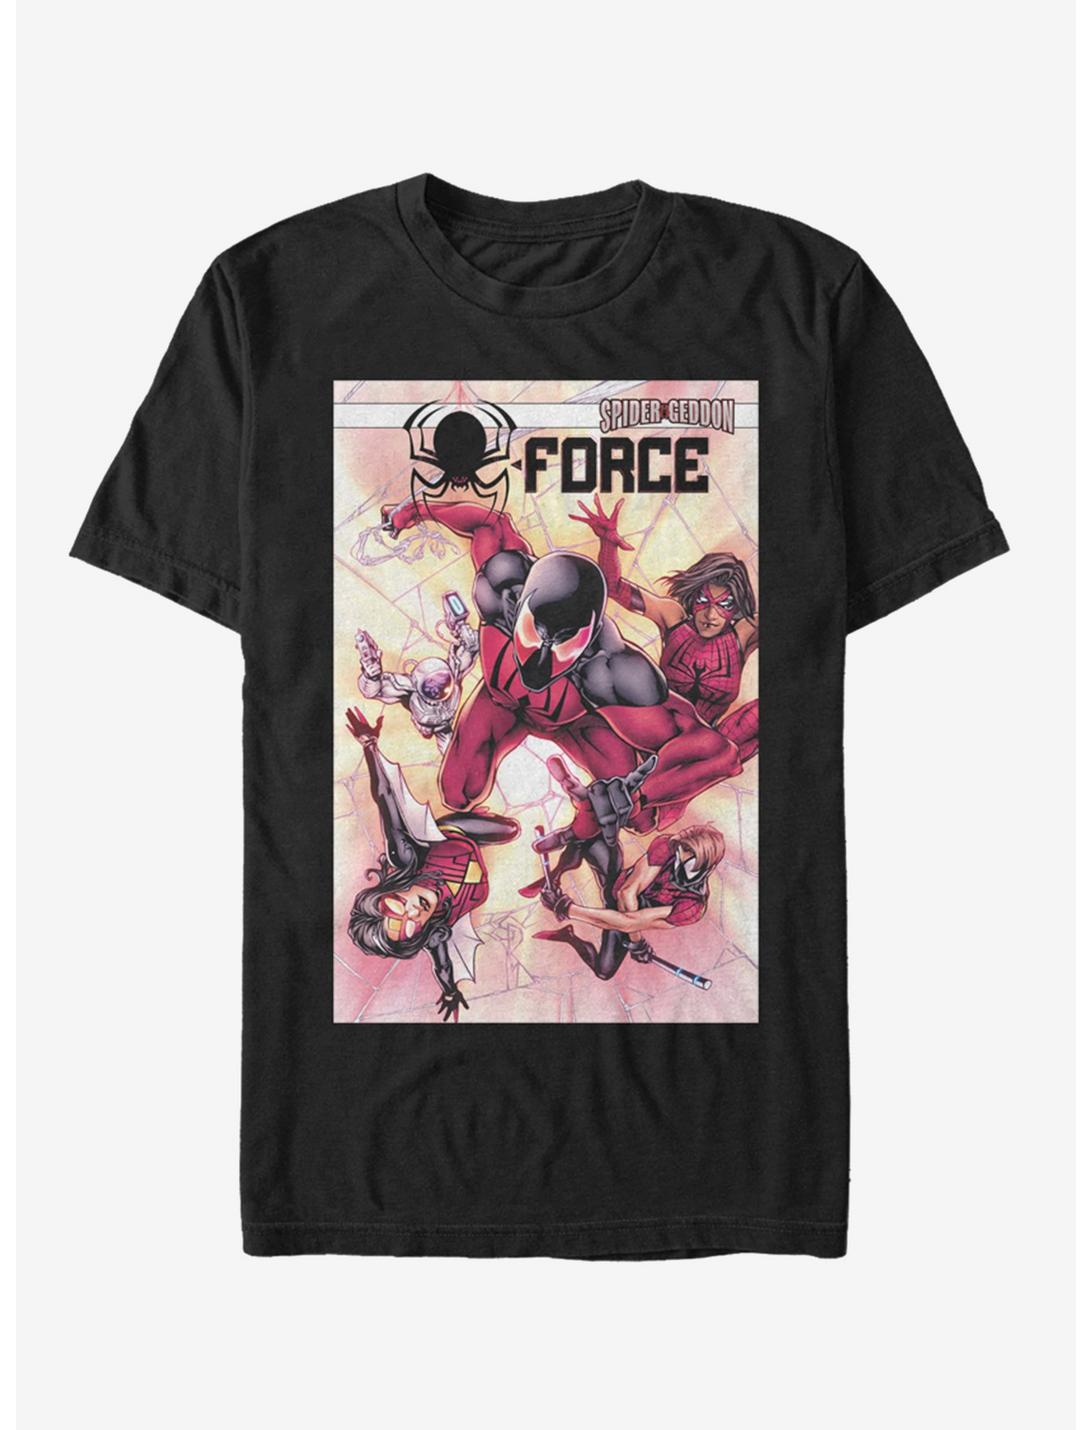 Marvel Spider-Man Spider-Geddon Force T-Shirt, BLACK, hi-res